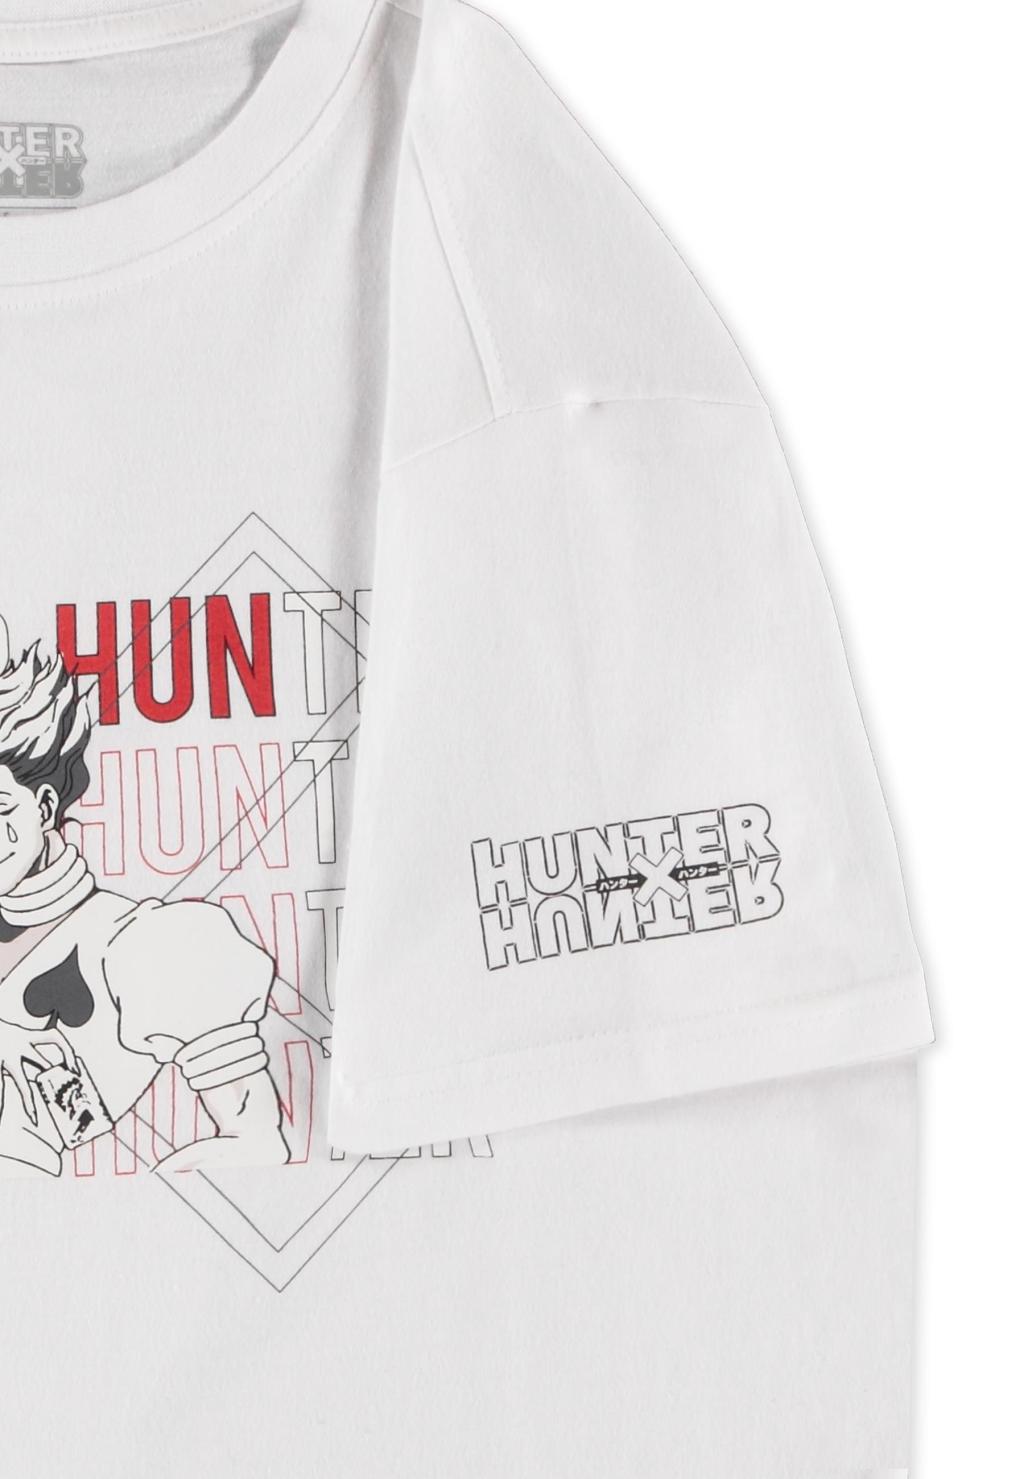 HUNTER X HUNTER - Hisoka - Women's T-shirt (XS)